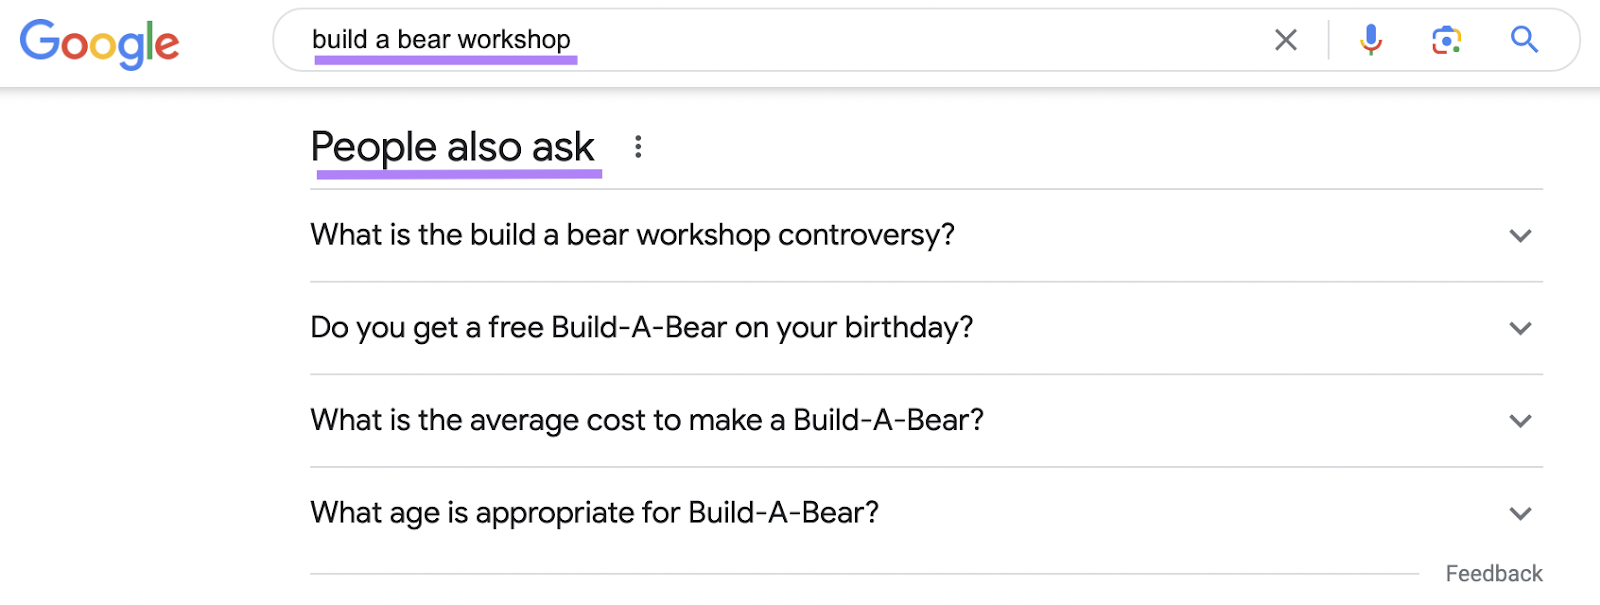 Section « Les gens demandent également » de Google pour la recherche « construire un atelier sur les ours »